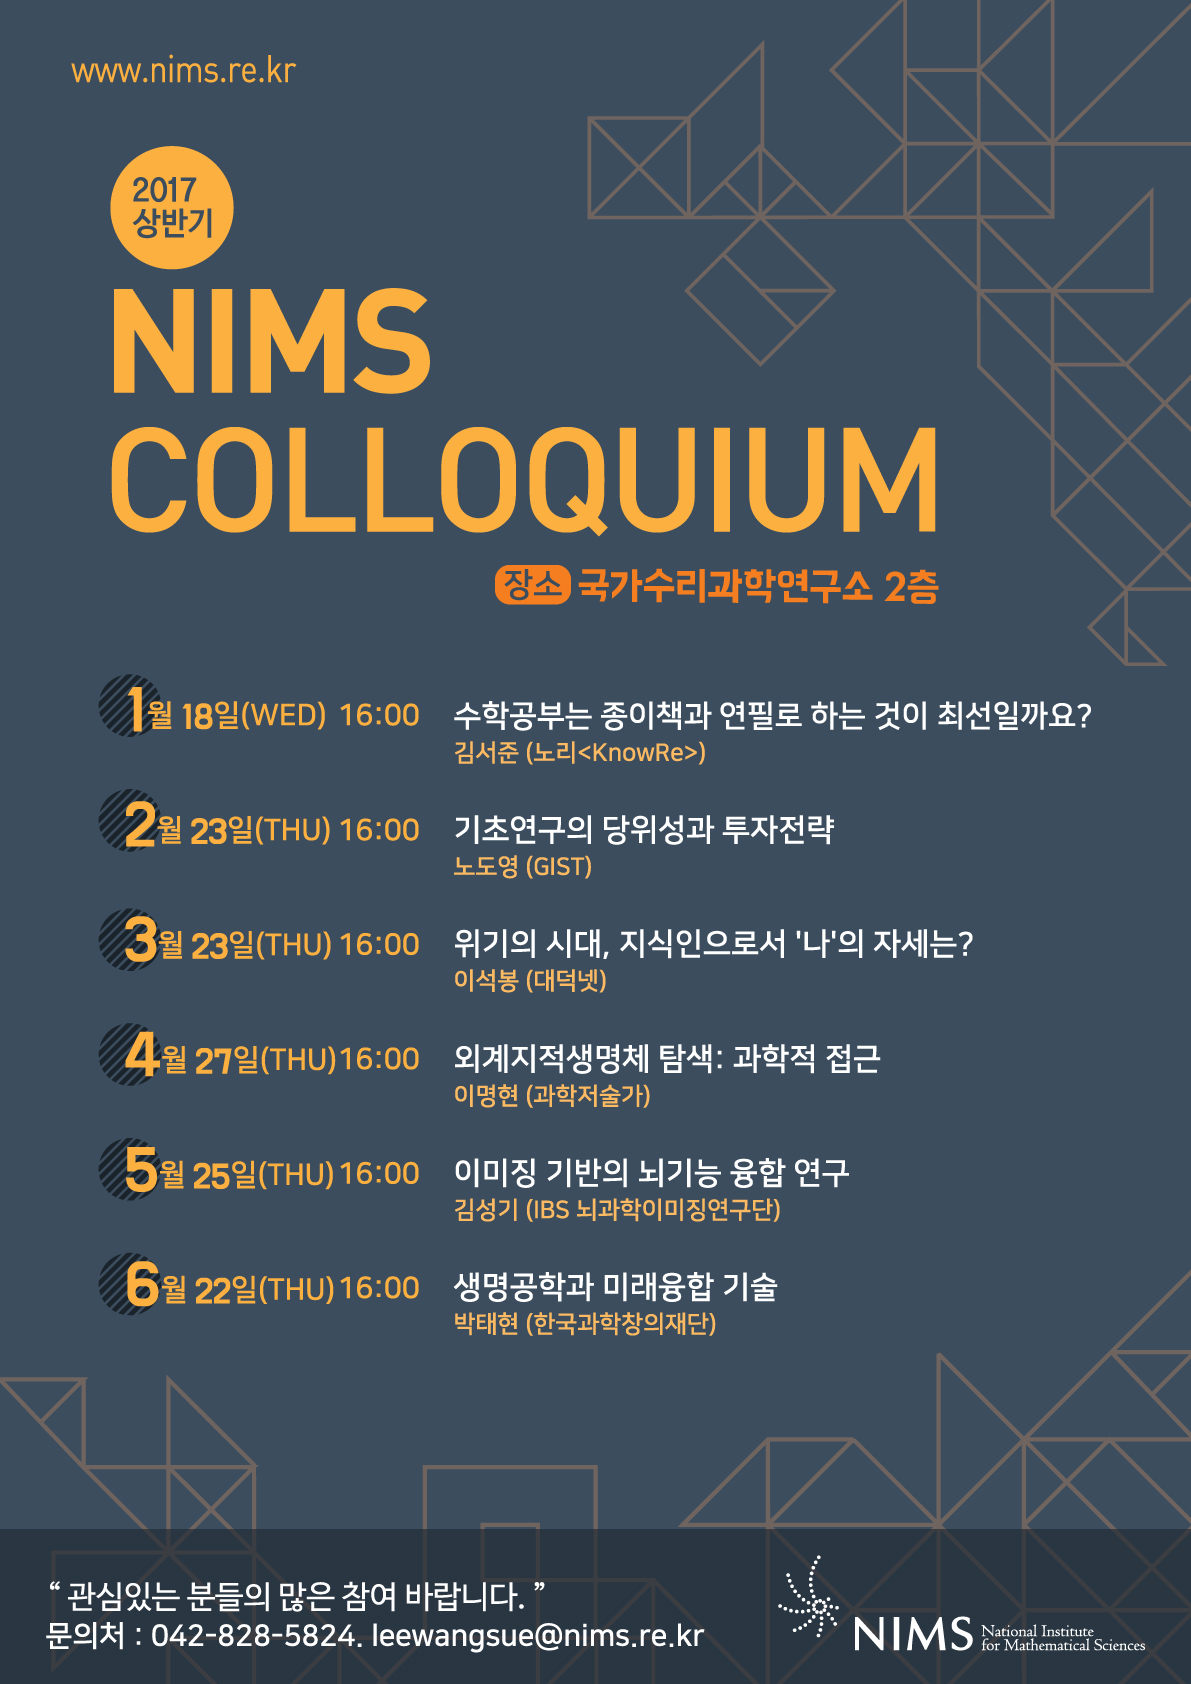 NIMS Colloquium  이미징 기반의 뇌기능 융합 연구. 자세한 내용은 본문 참조